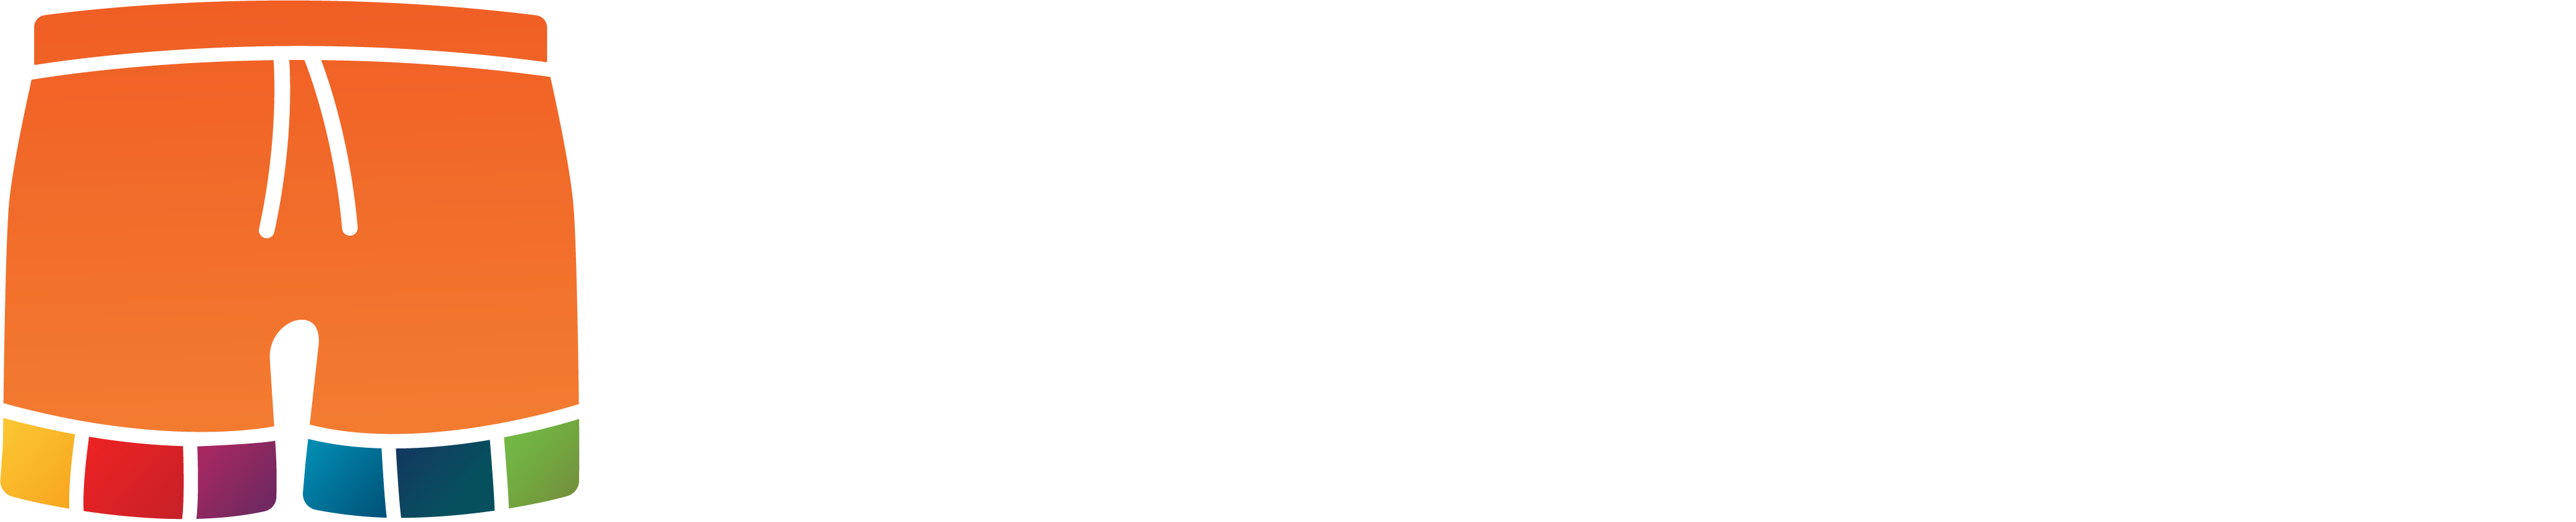 Short Breaks Australia - Give the gift of travel